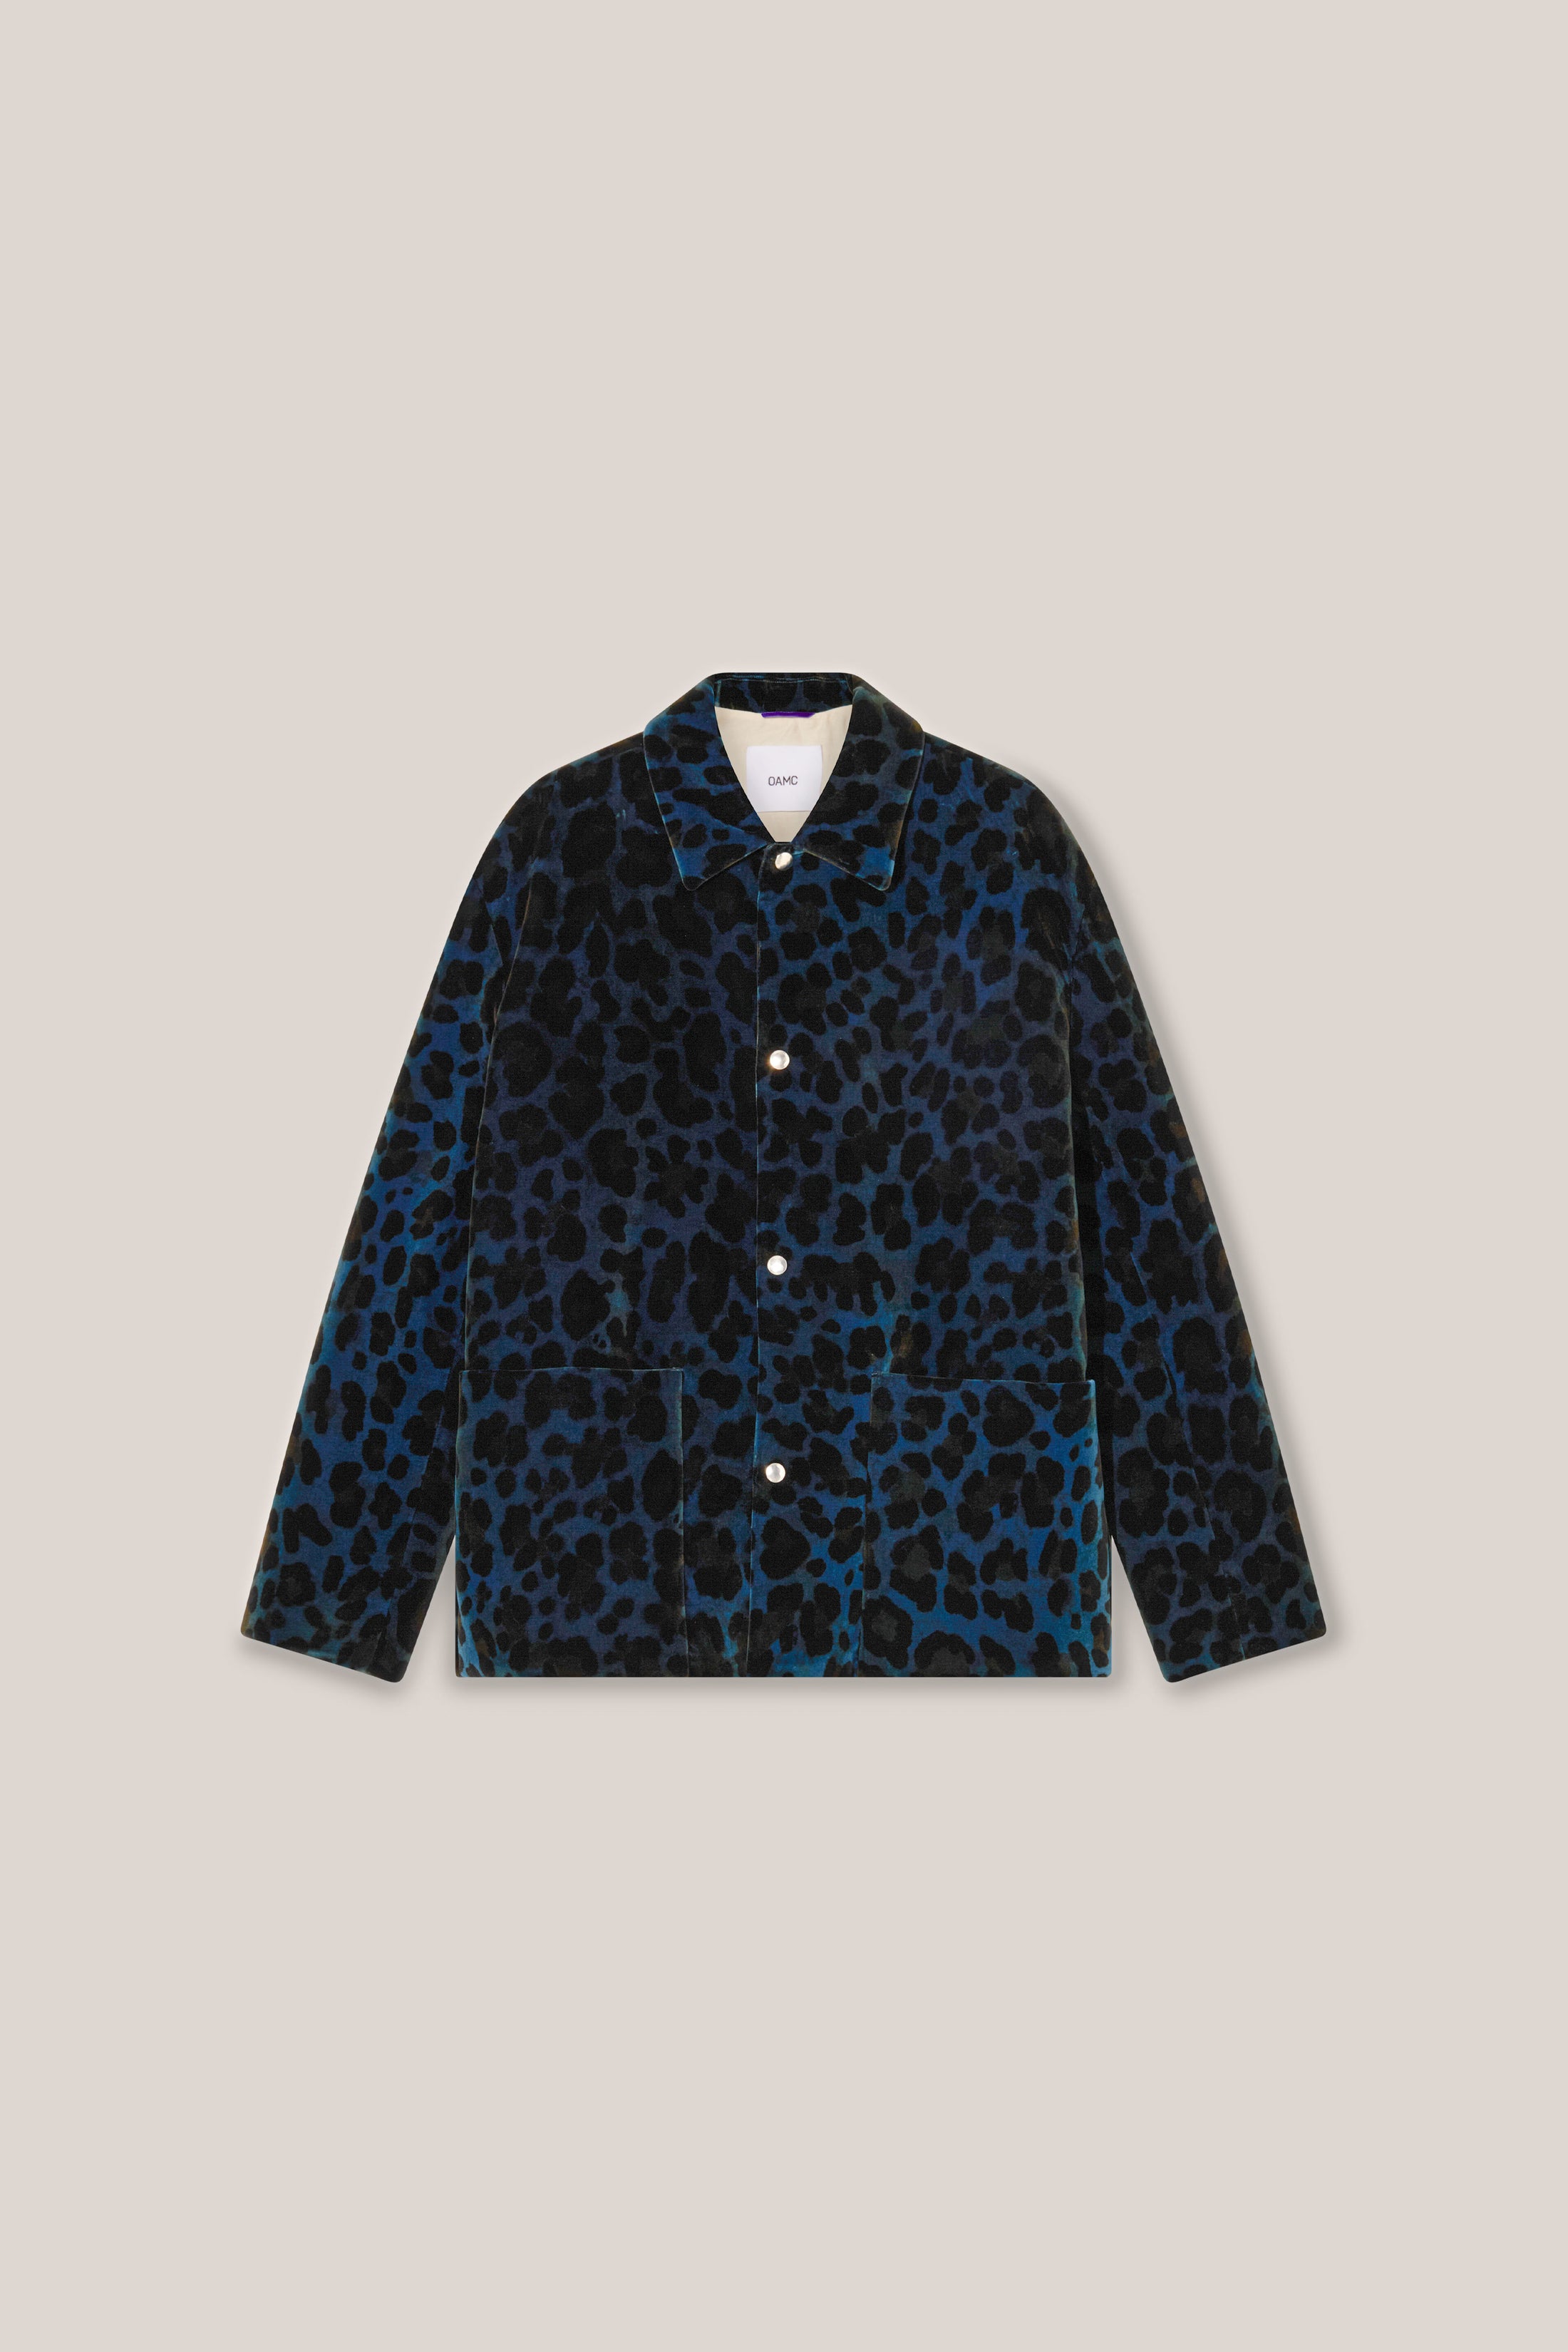 Guide Leopard-Print Cotton Jacket